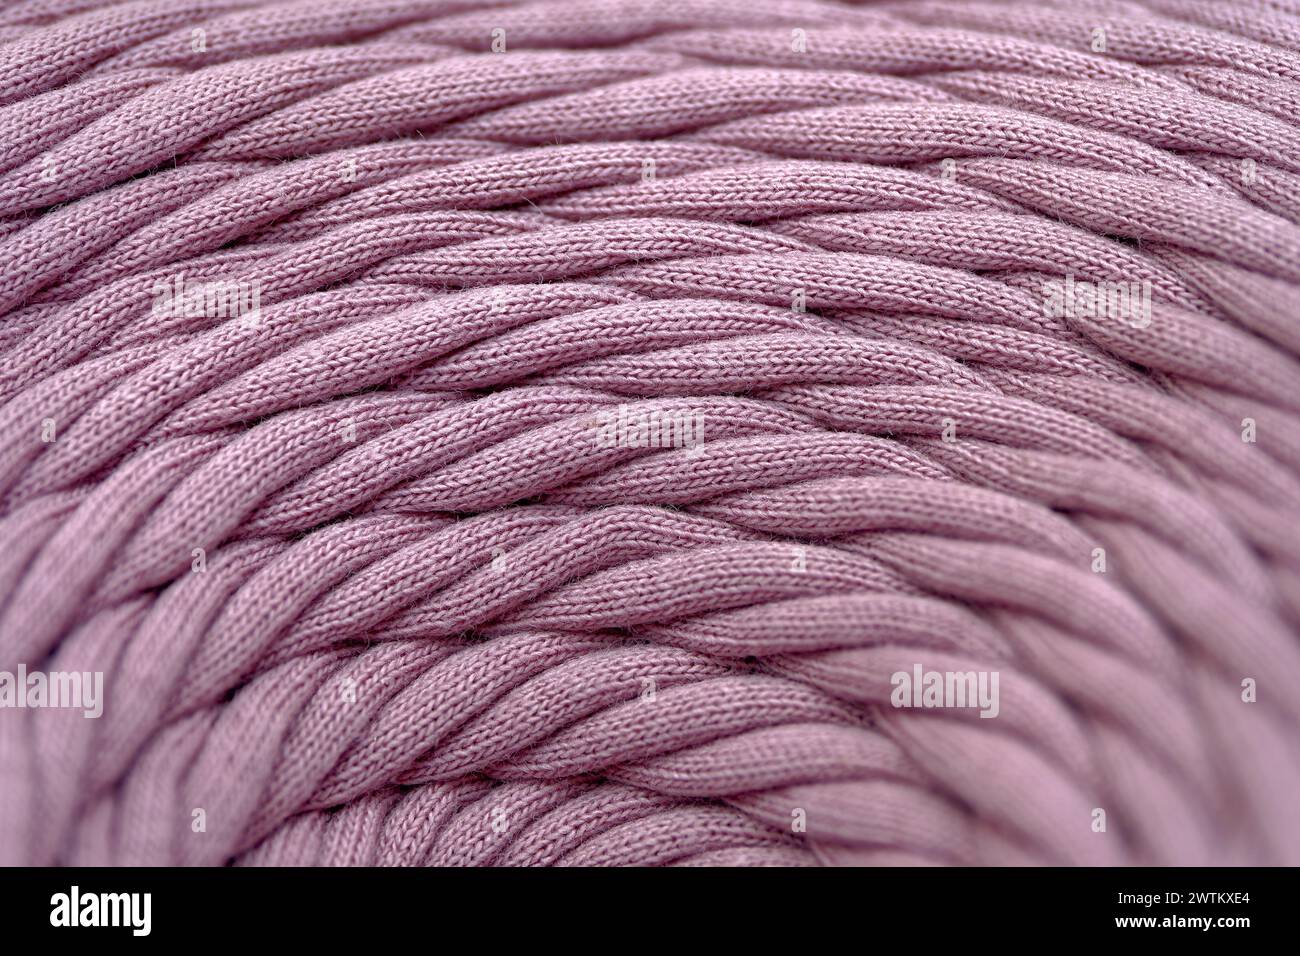 Knäuel aus rosa geflochtener synthetischer Schnur, Nahaufnahme, selektiver Fokus, abstrakter Textilindustrie Hintergrund Stockfoto